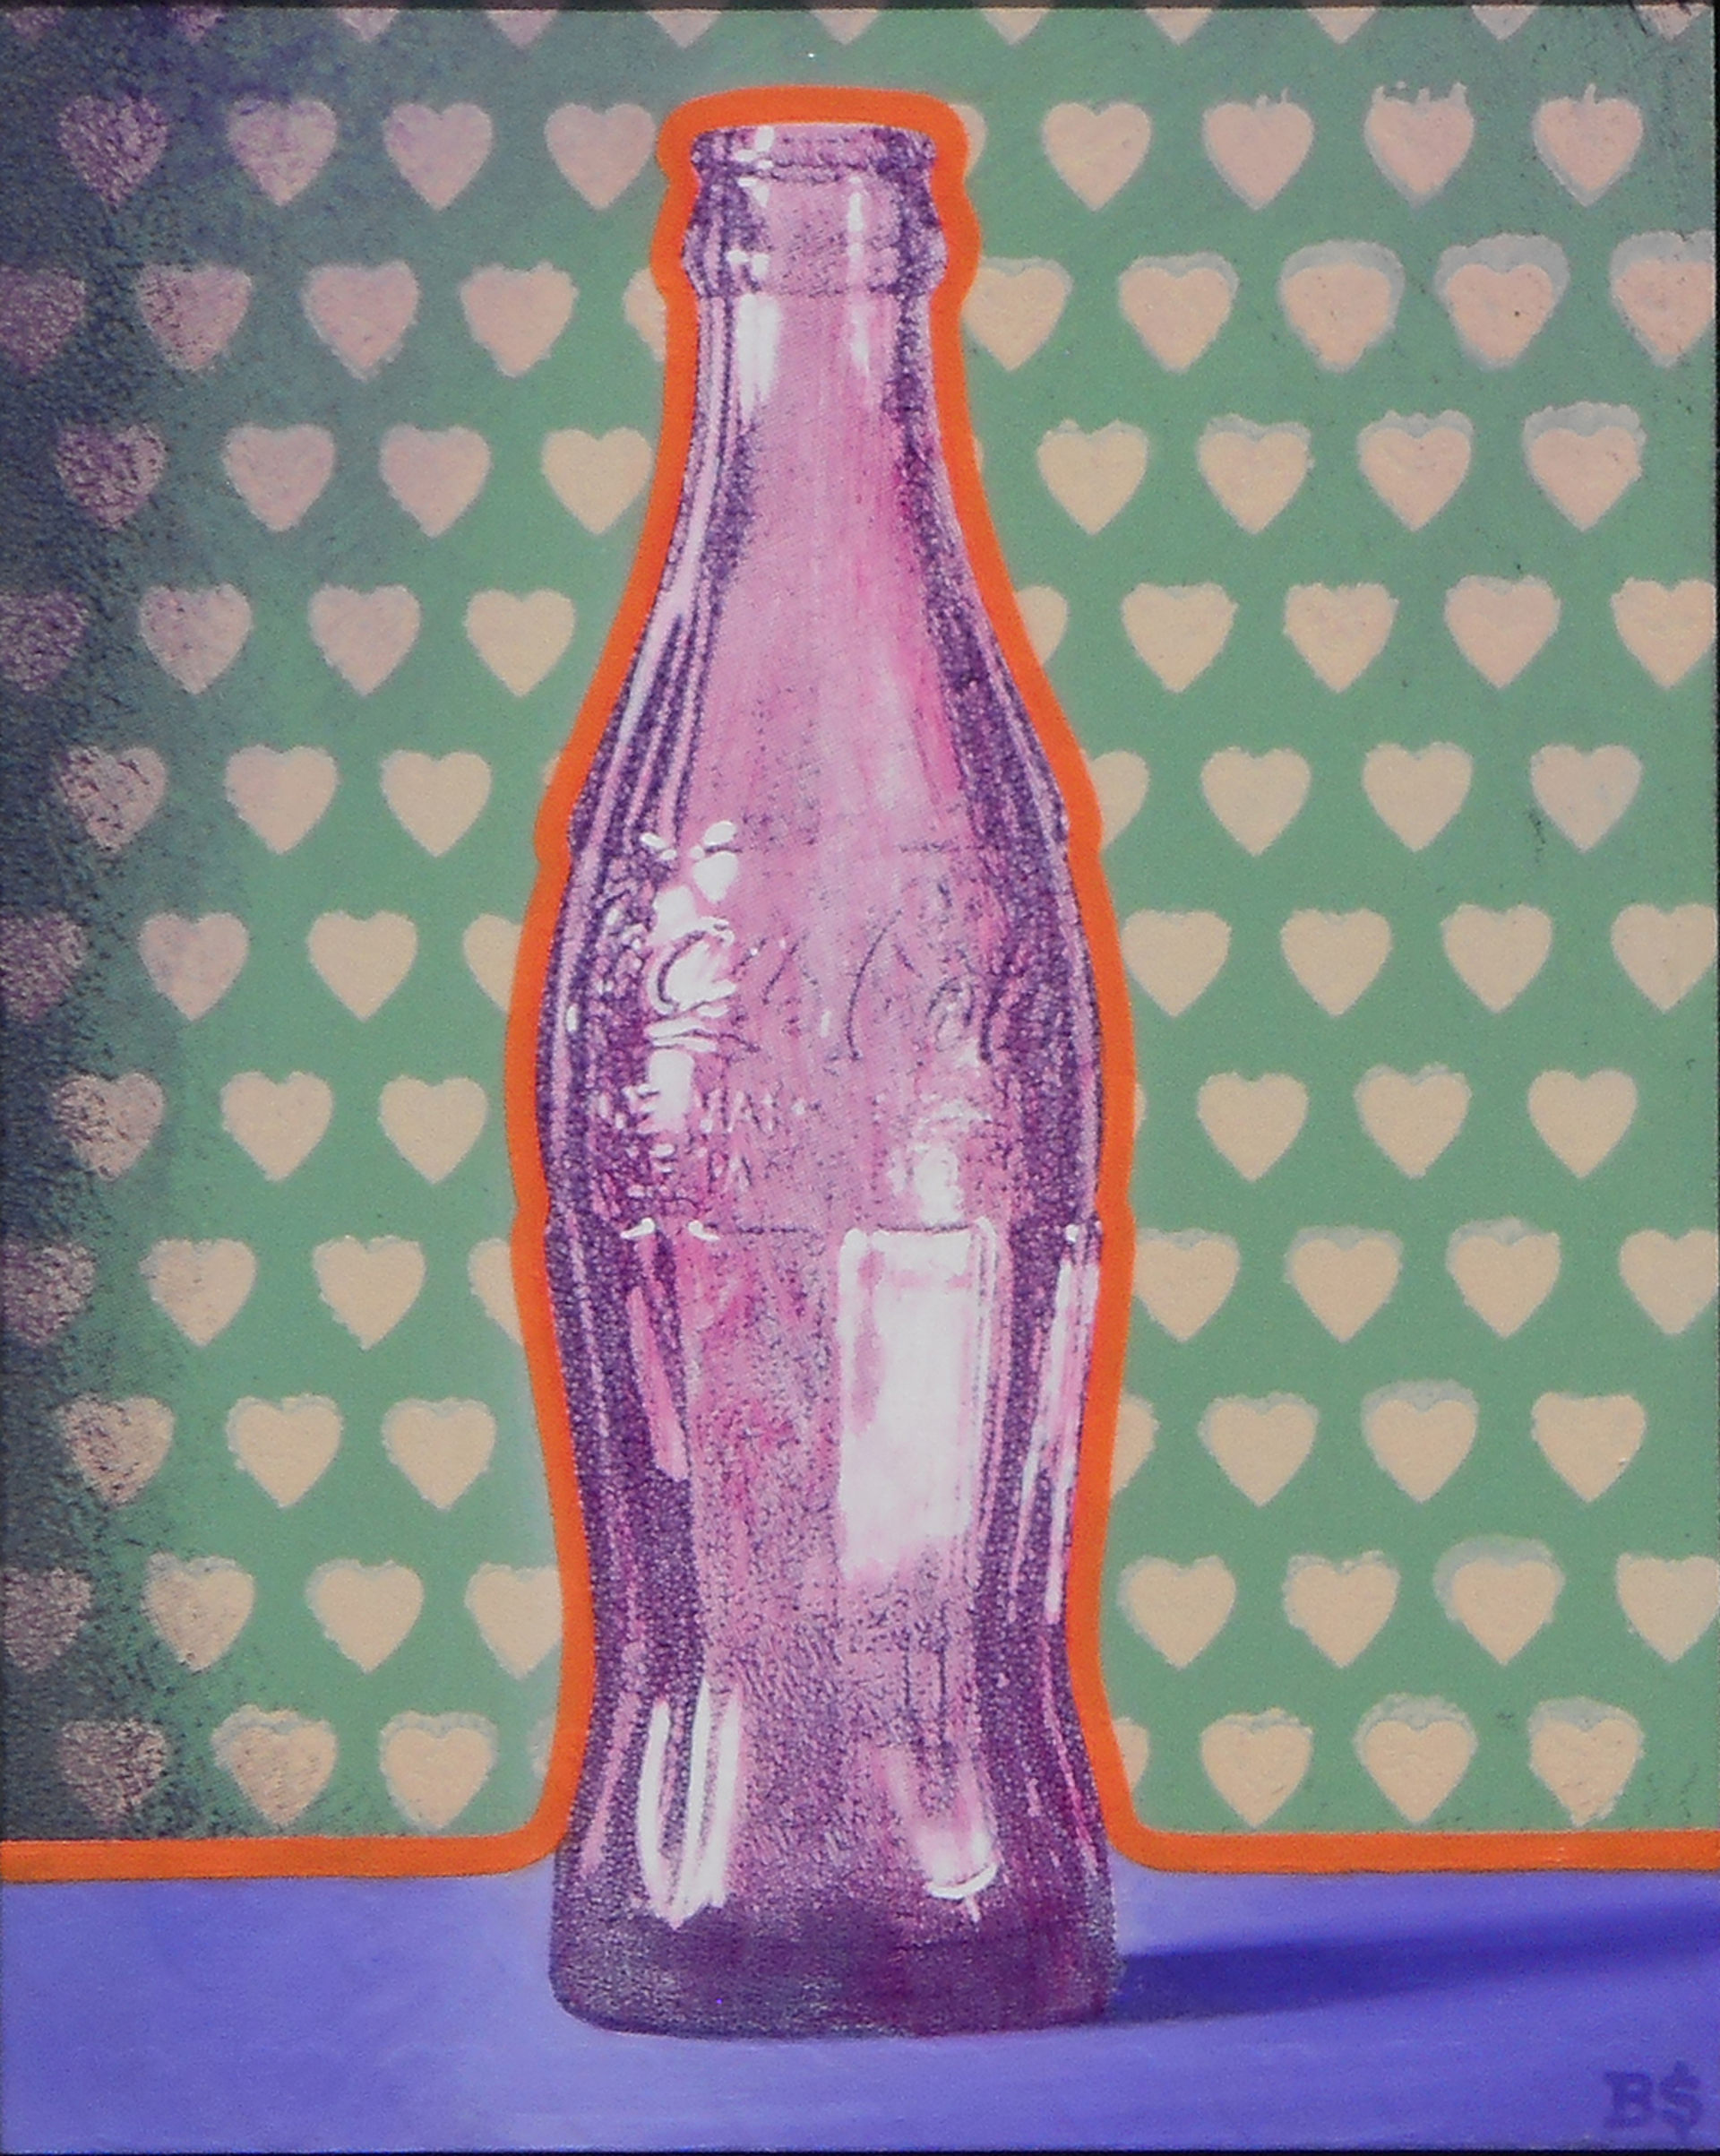 Coke:  I Heart by Ben Steele